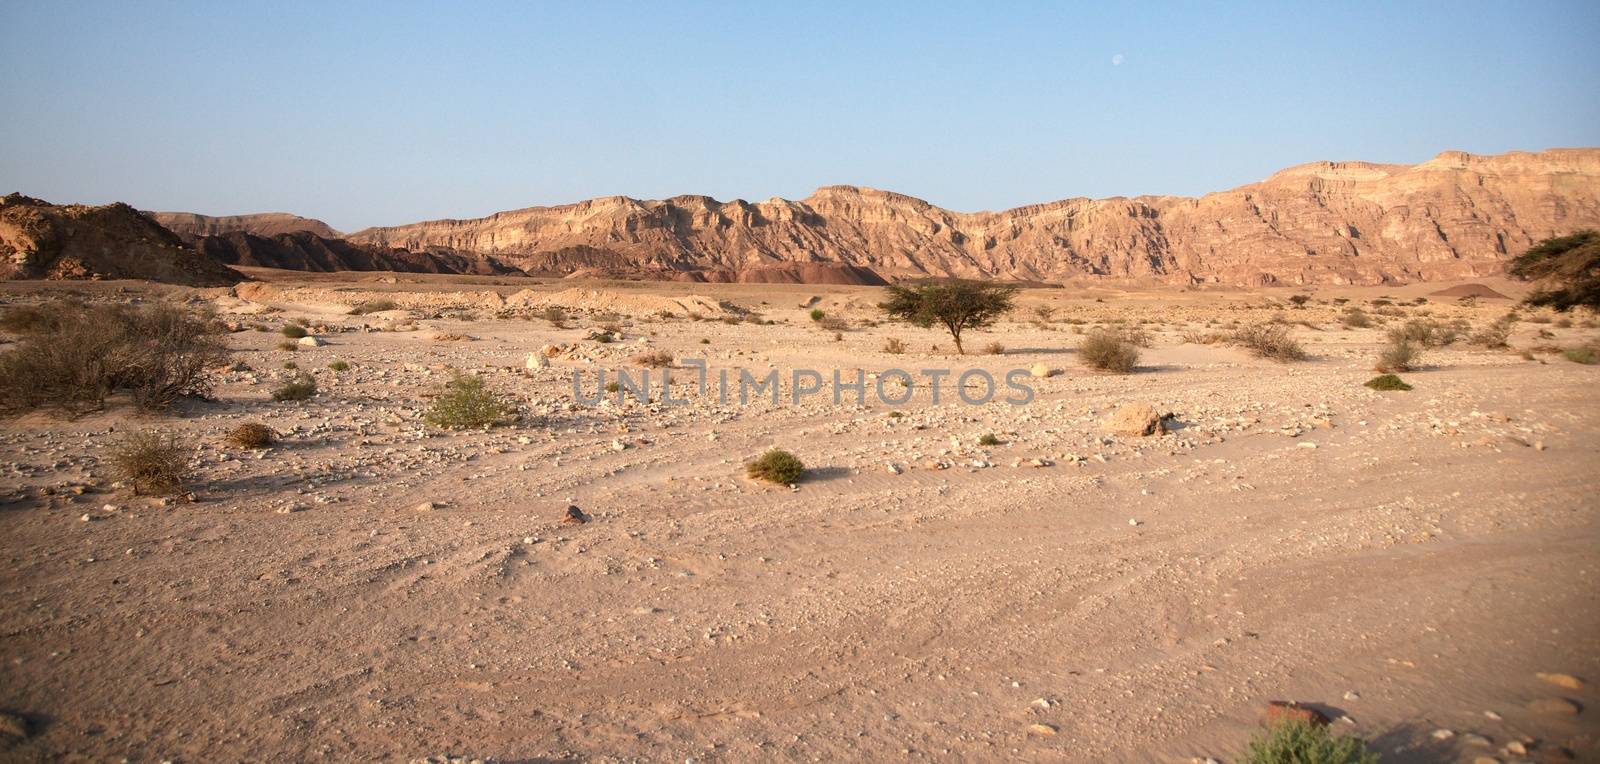 Travel in Arava desert by javax